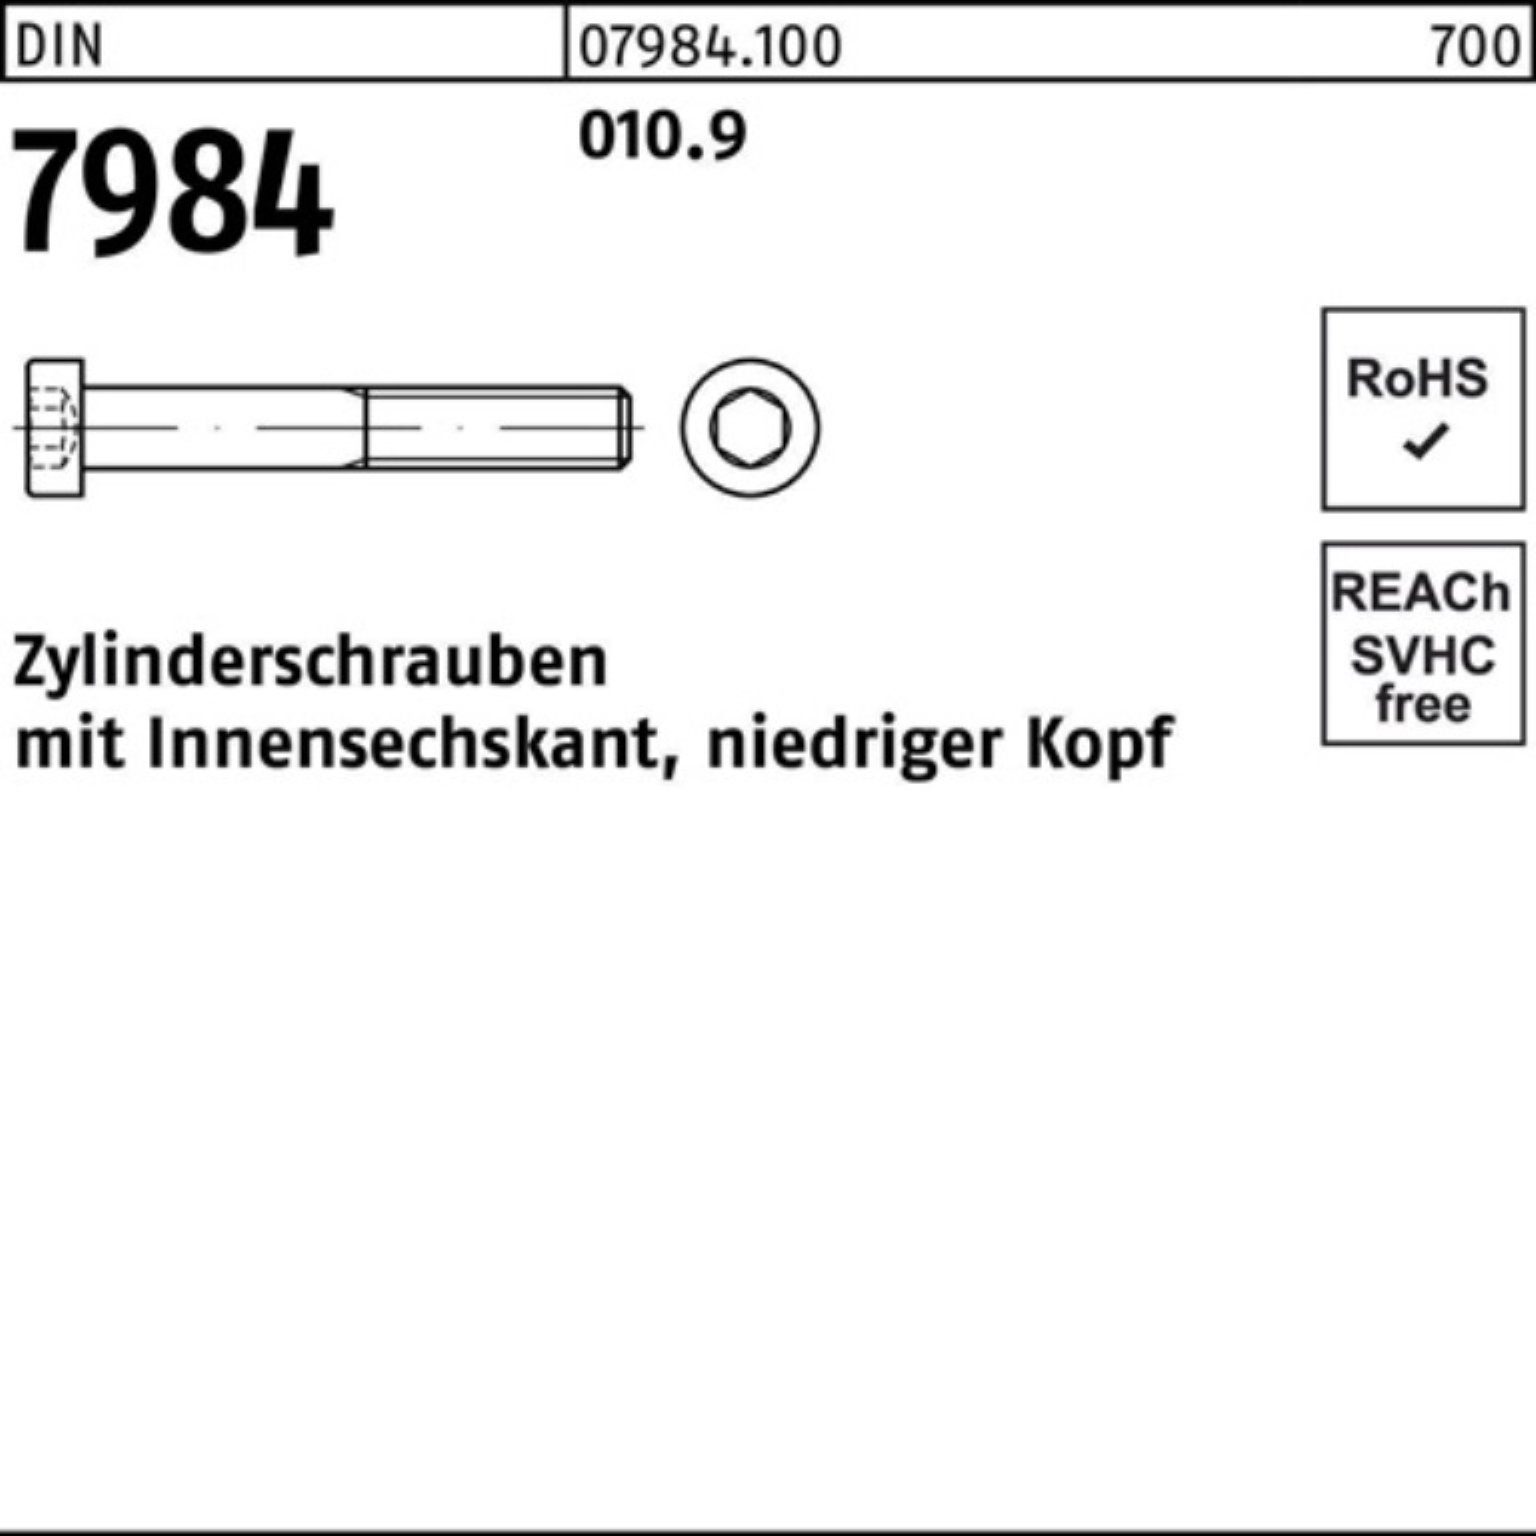 DIN Reyher Zylinderschraube 500er 7984 Innen-6kt Pack 500 Stück 16 010.9 M6x Zylinderschraube